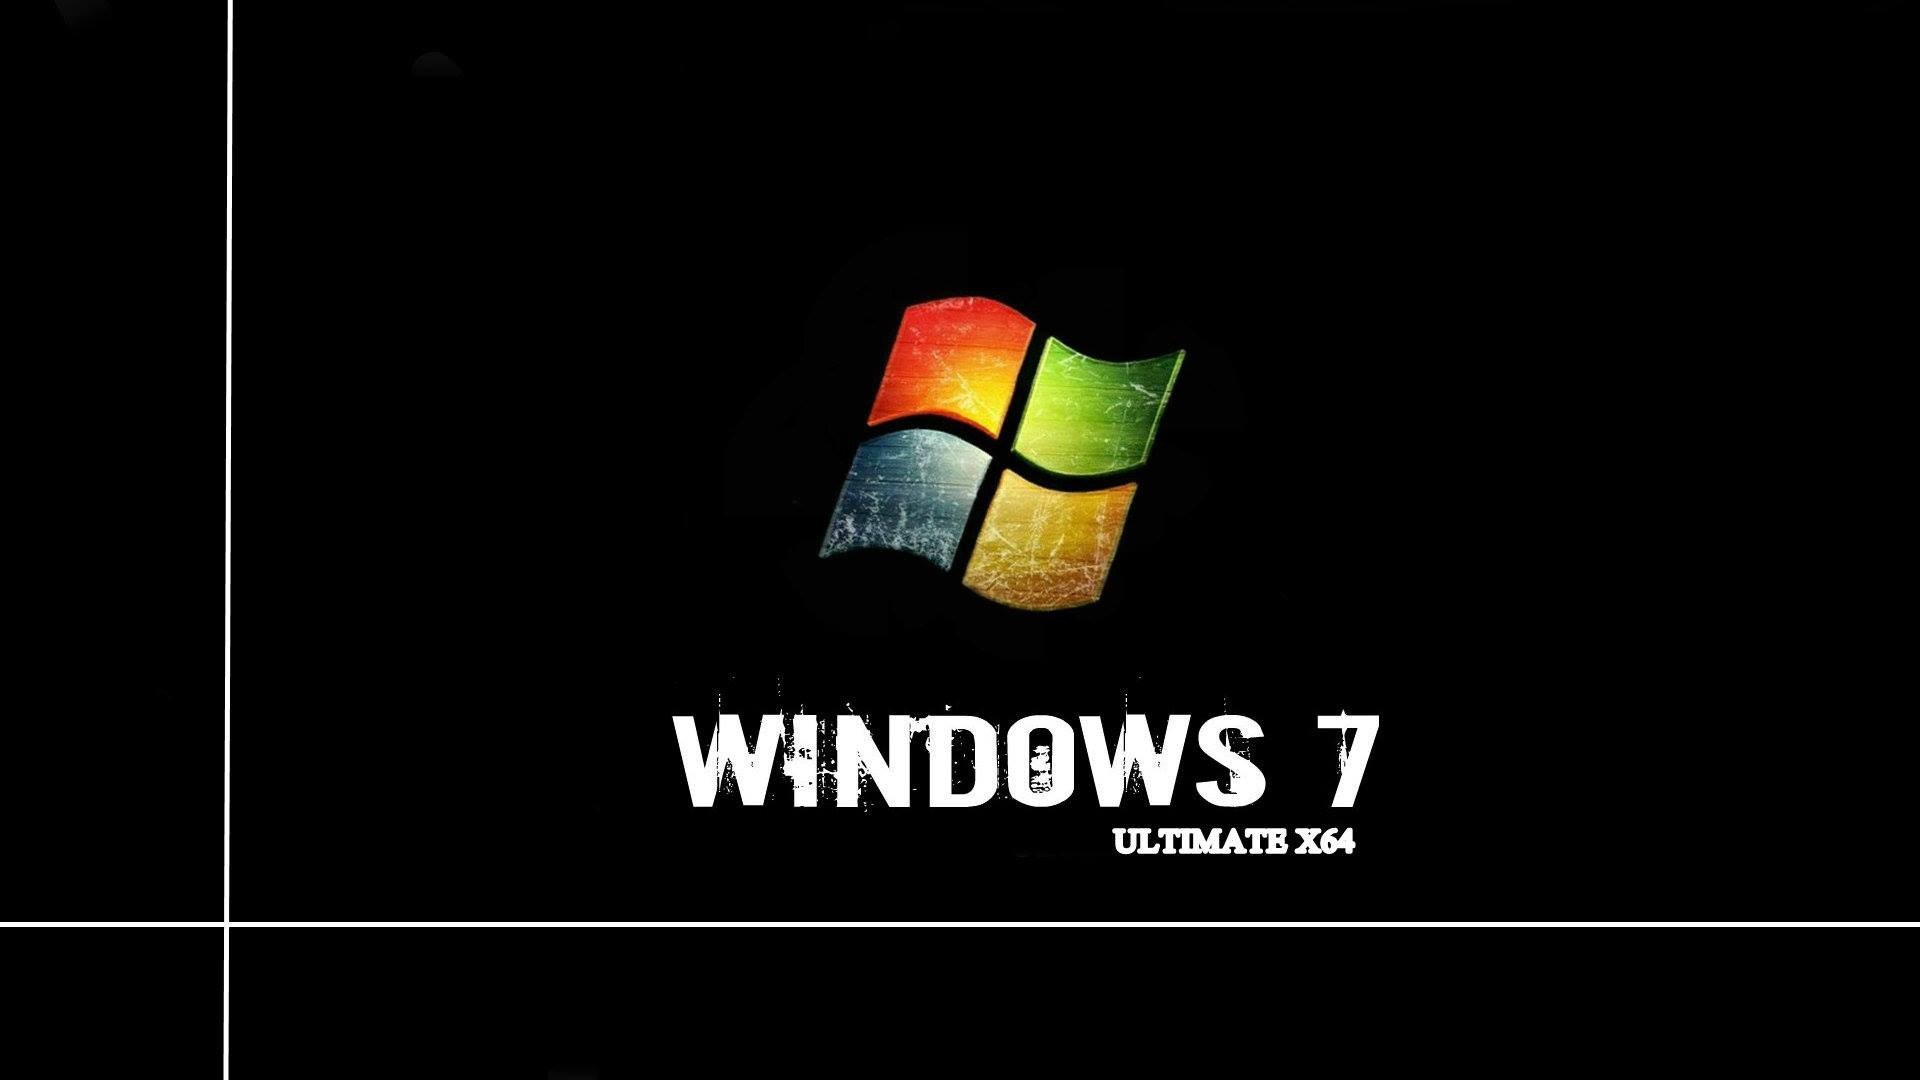 Windows 7, Technology Wallpaper